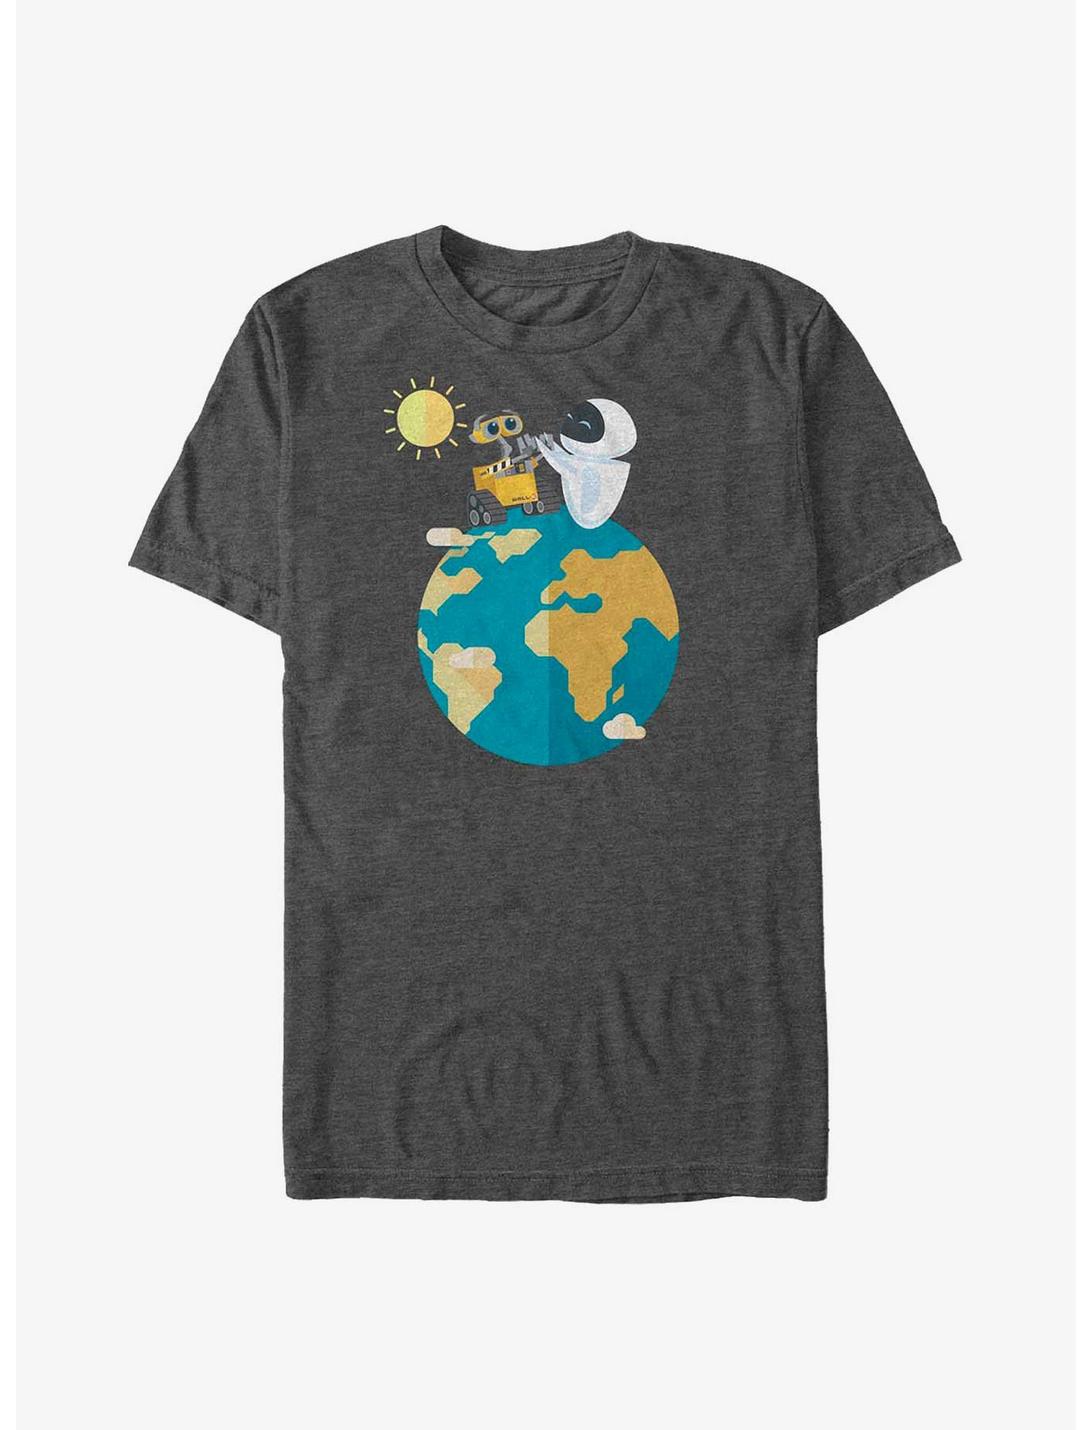 Disney Pixar Wall-E World Peace T-Shirt, CHAR HTR, hi-res